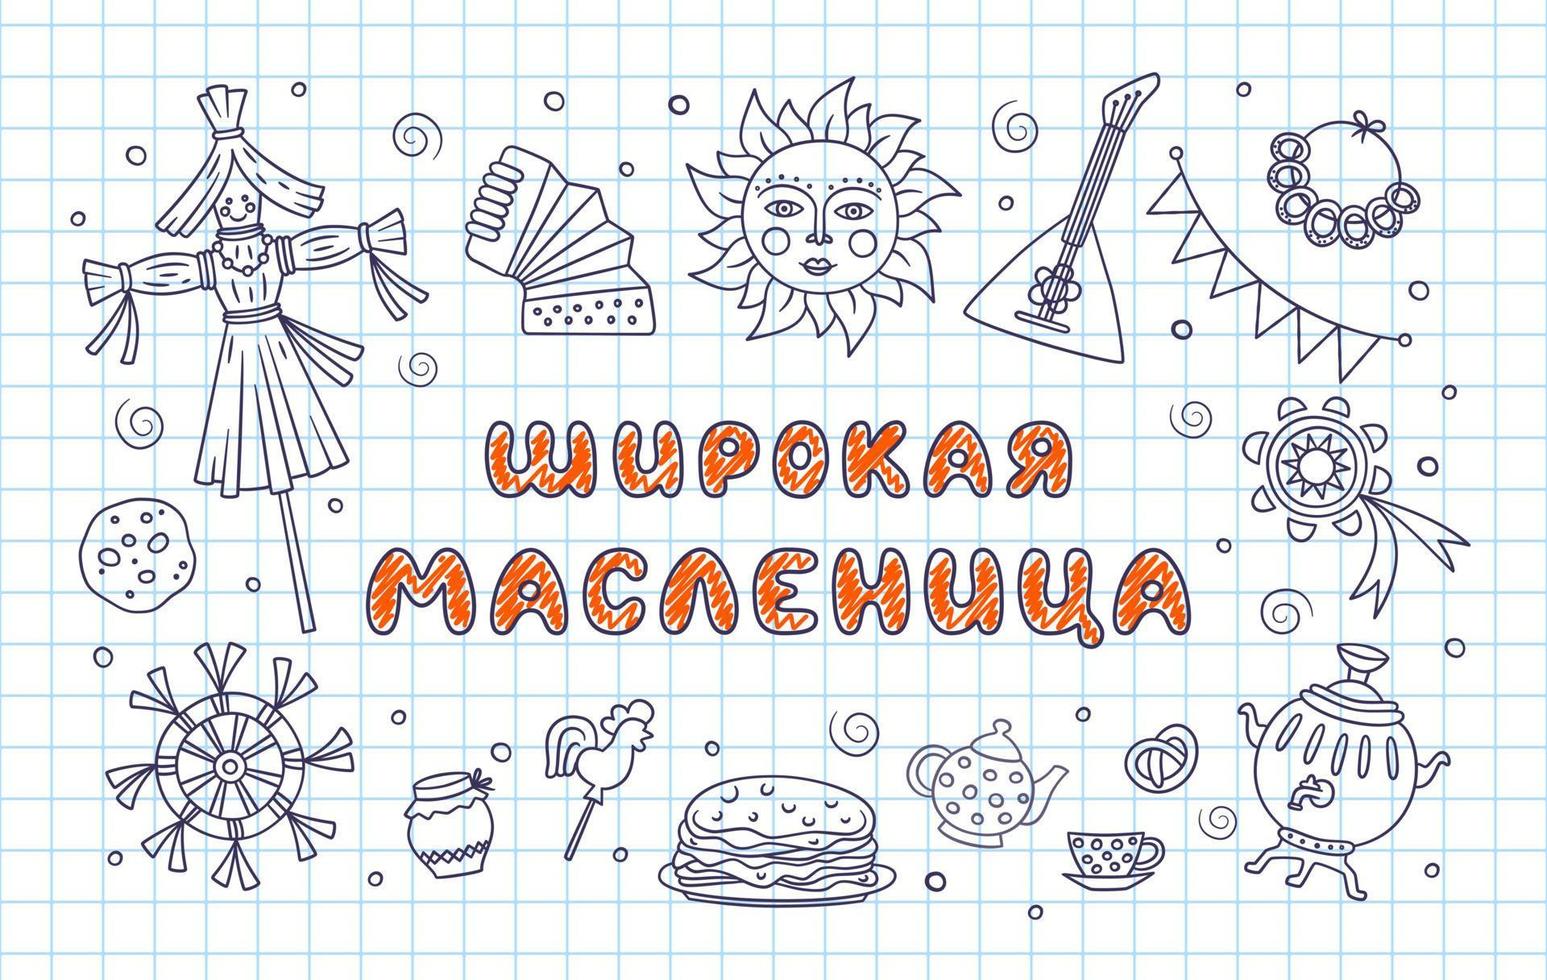 maslenitsa ou mardi gras. lettrage large semaine de crêpes. texte cyrillique dans un cahier dans une cage. illustration vectorielle sur le style doodle vecteur